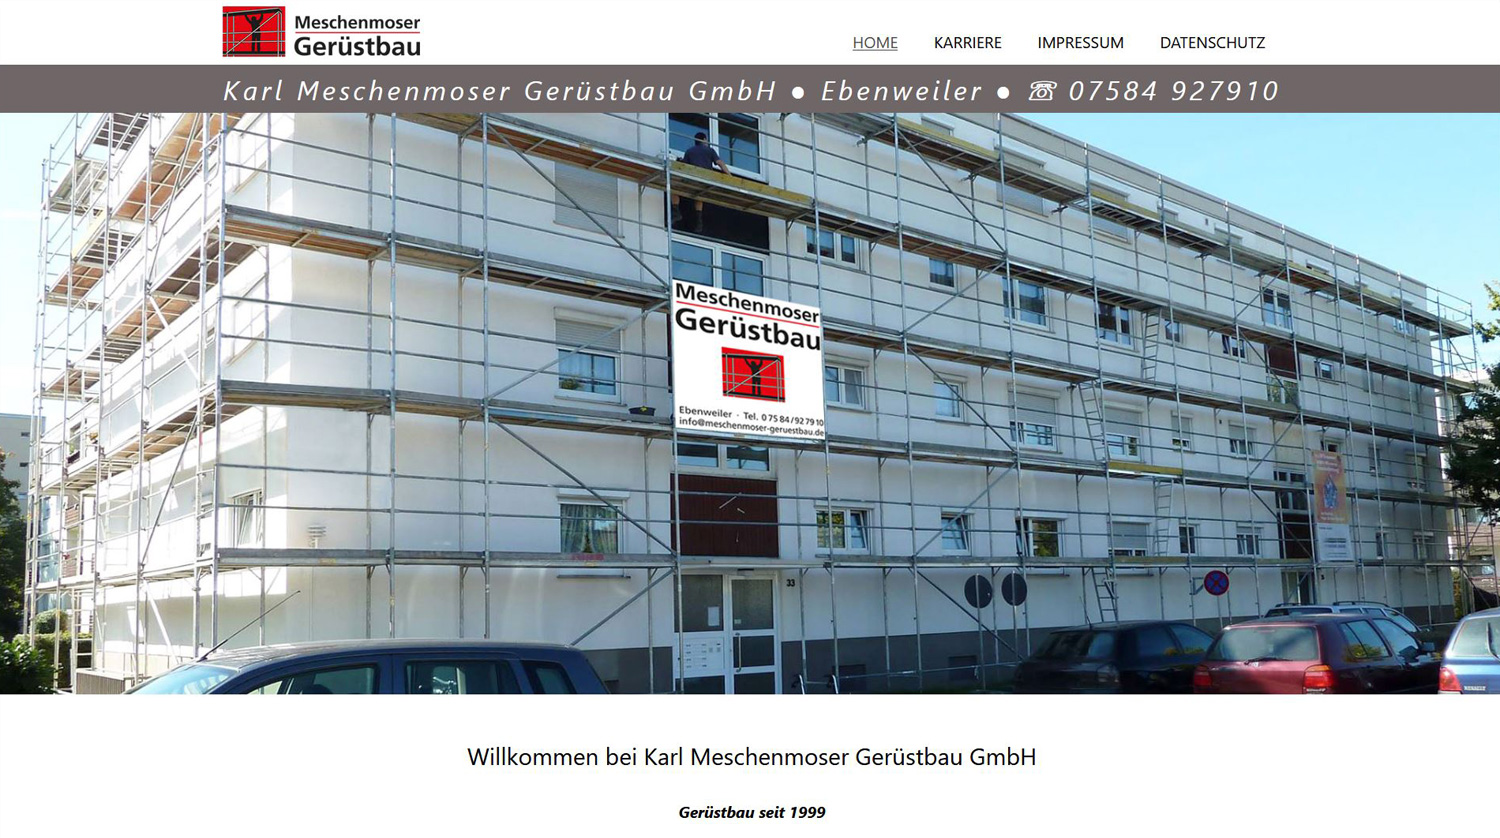 Karl Meschenmoser Gerüstbau GmbH in Ebenweiler, Kreis Ravensburg, Gerüstbau seit 1999